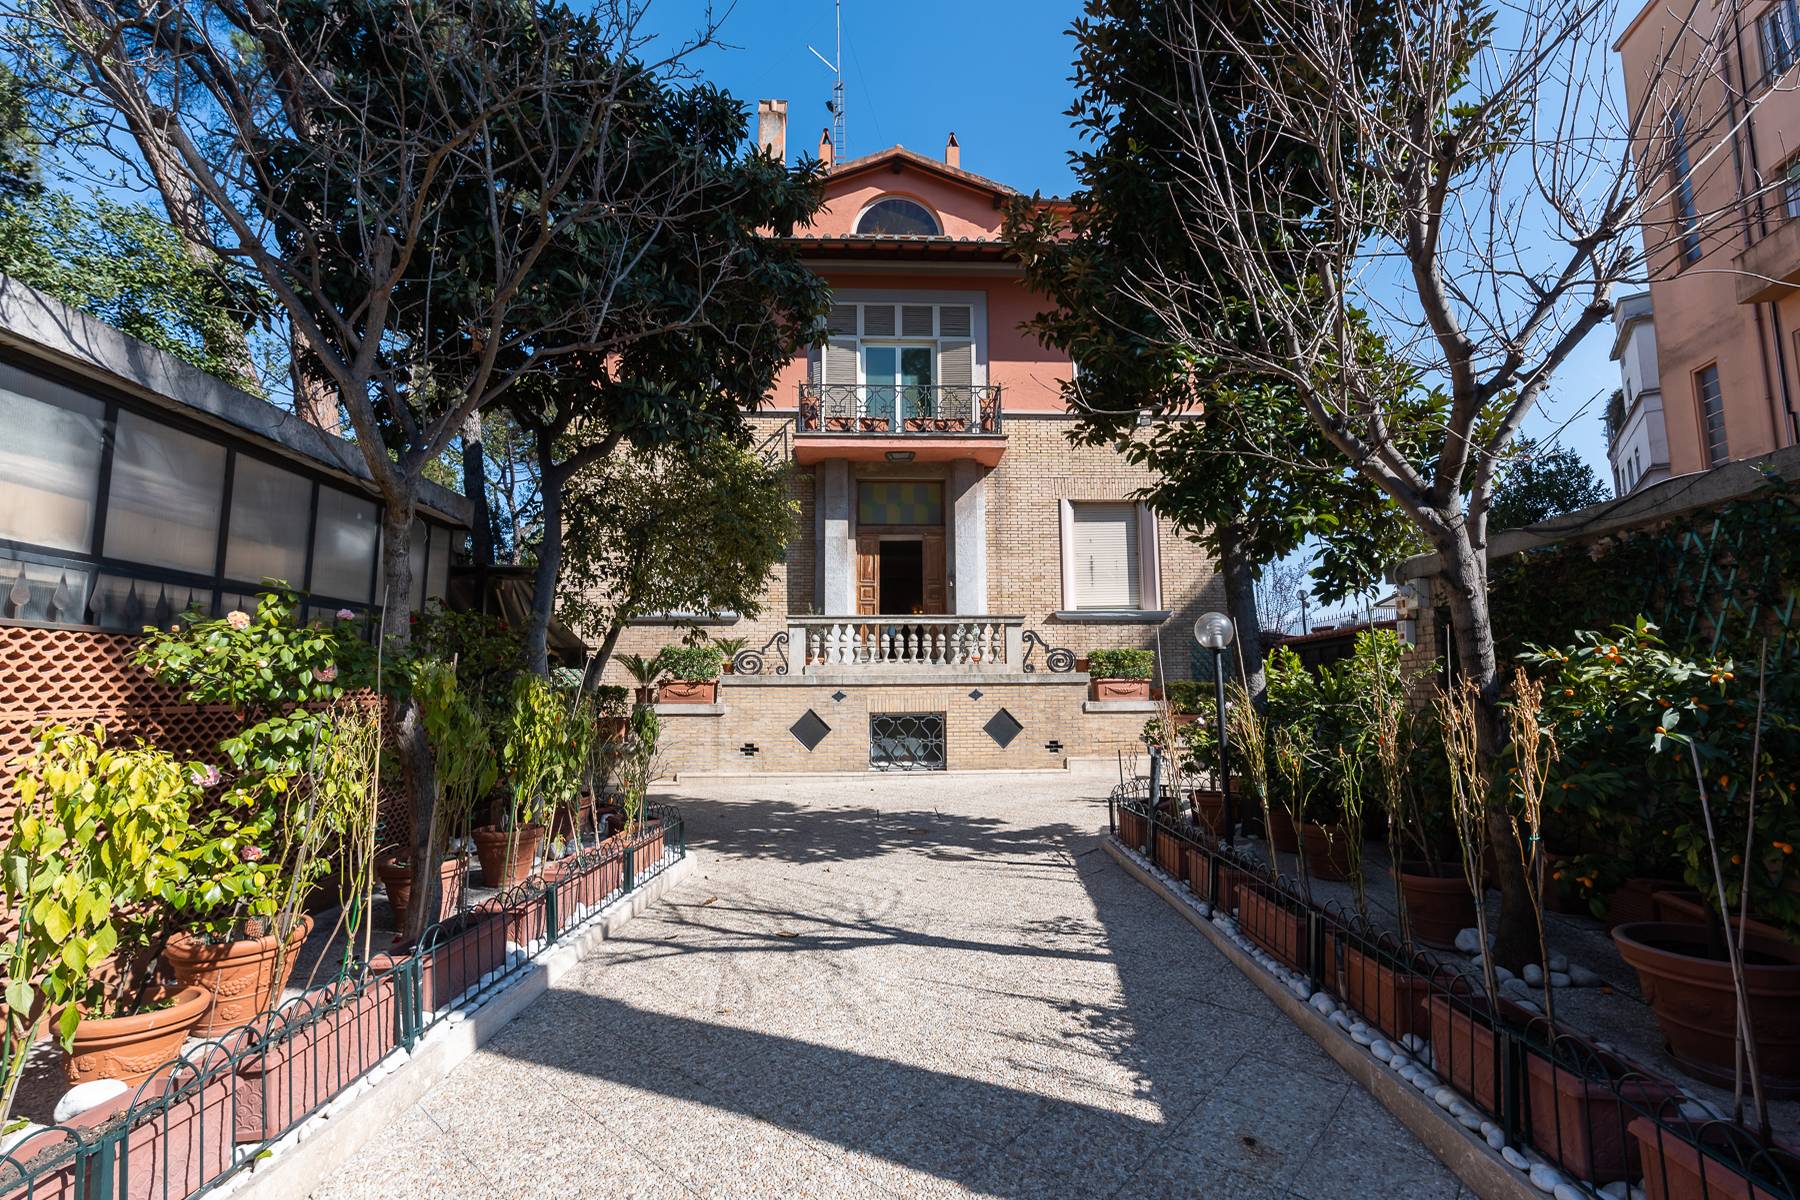 Stunning villa in the heart of the Parioli neighborhood